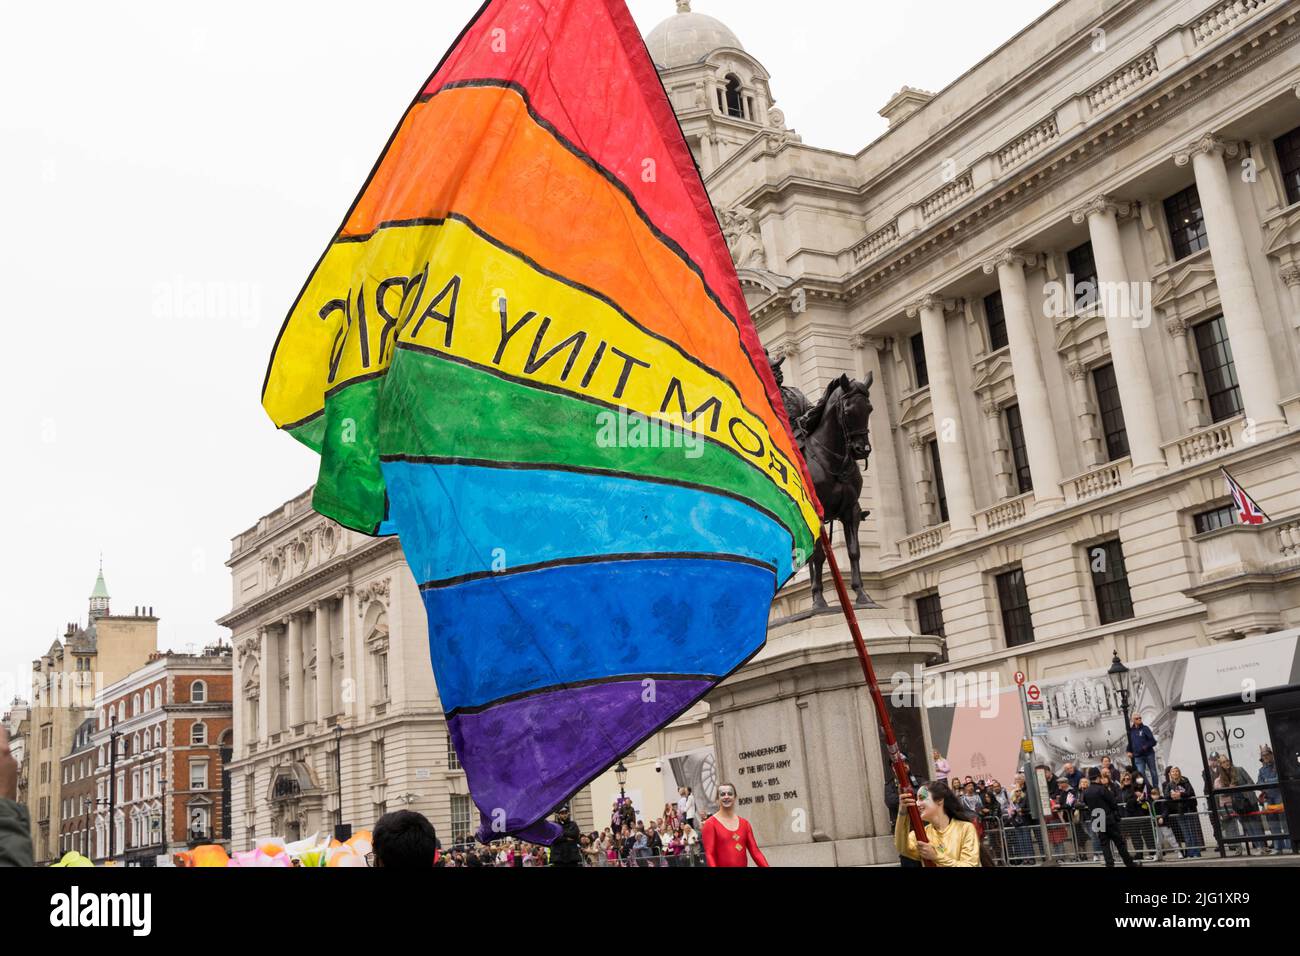 drapeau rainbows vu pendant le défilé de jubilé de platine de la reine Westmister Londres UK Banque D'Images